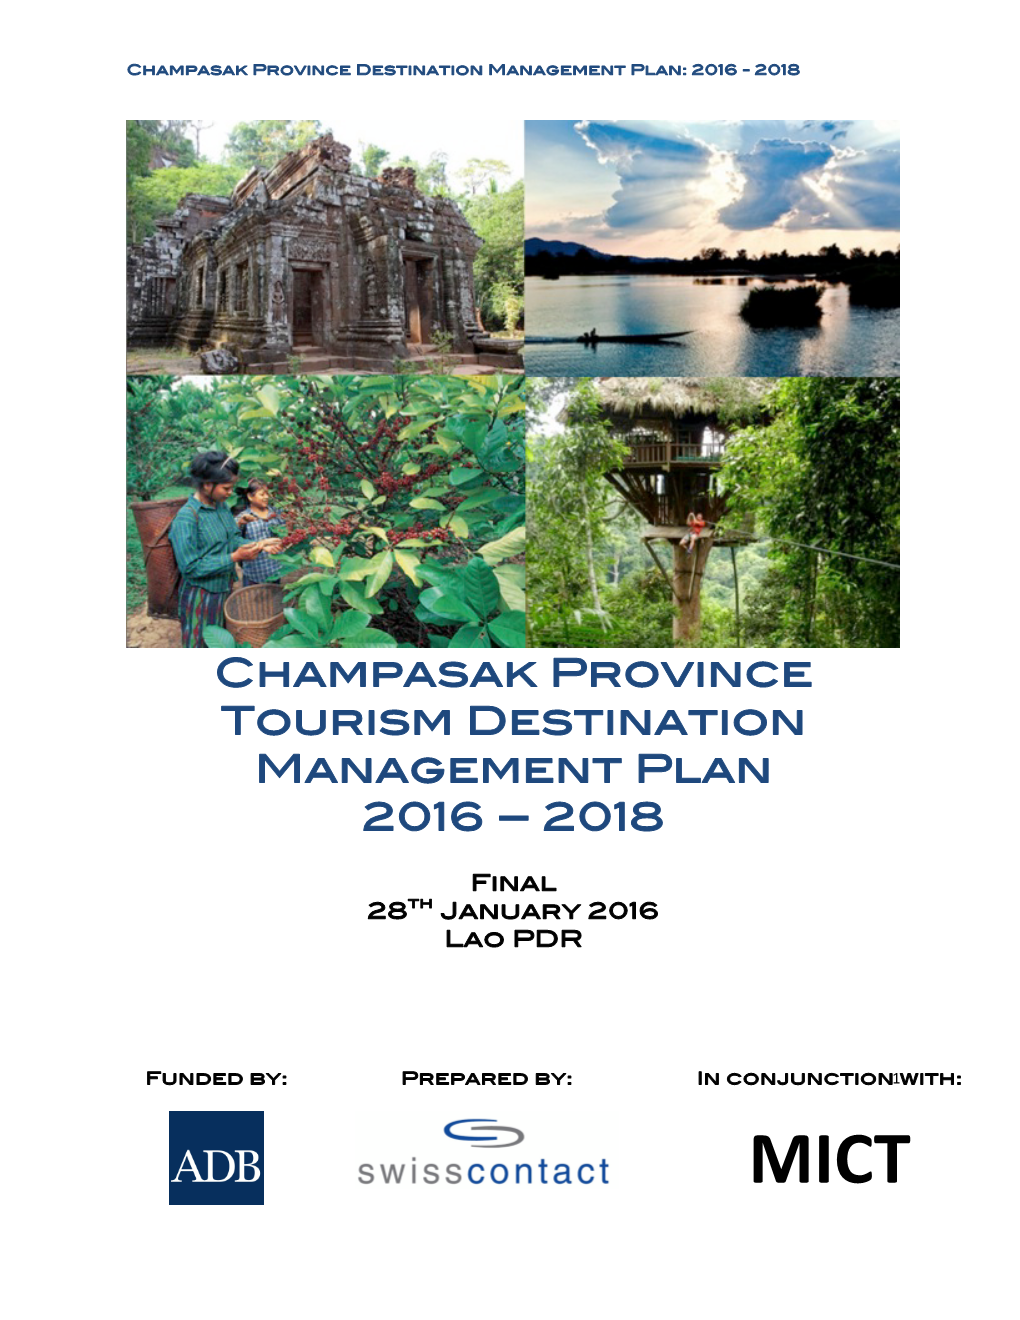 Champasak Province Destination Management Plan 2016-2018